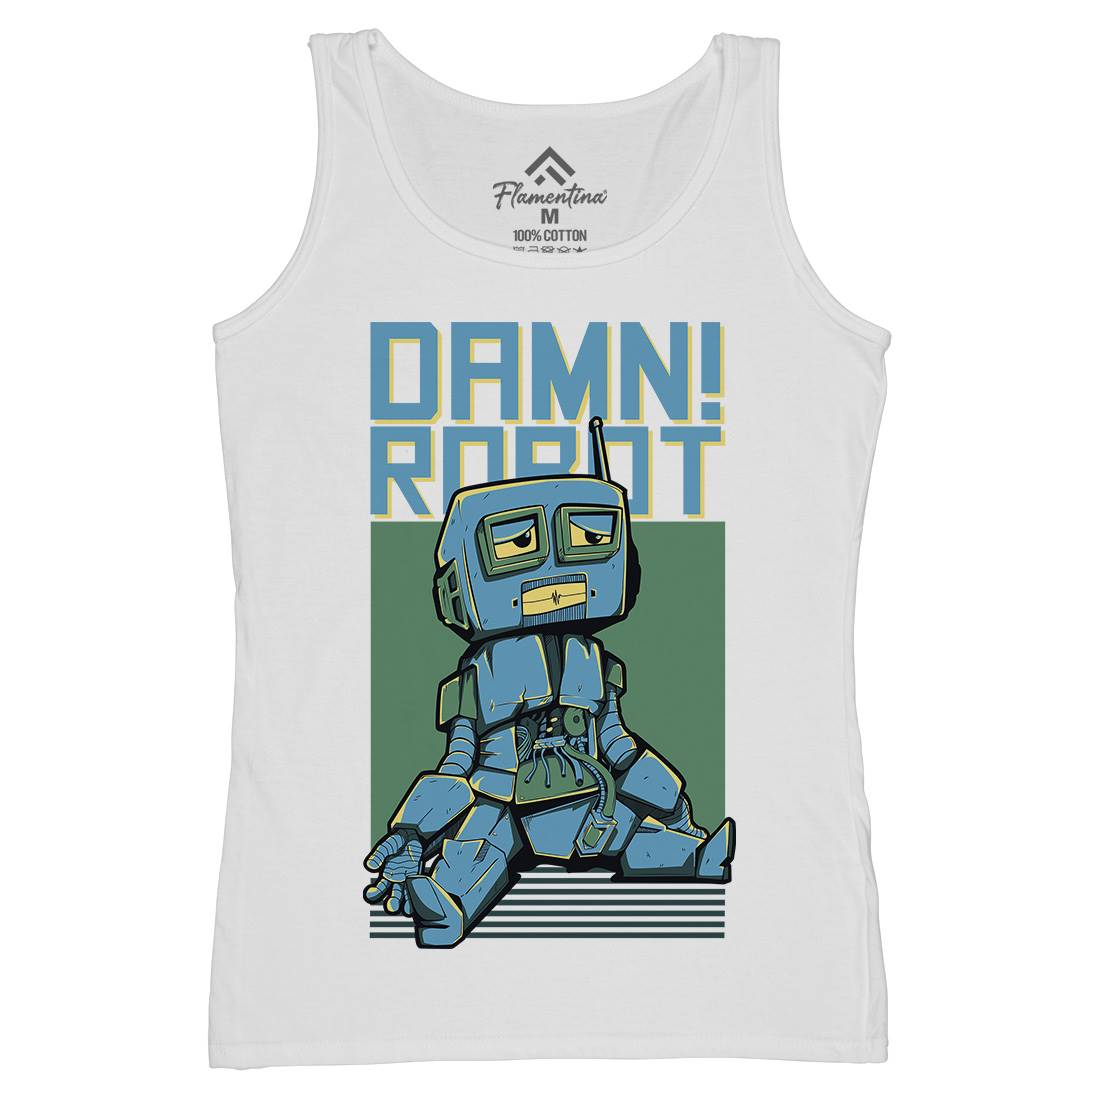 Damn Robot Womens Organic Tank Top Vest Space D743